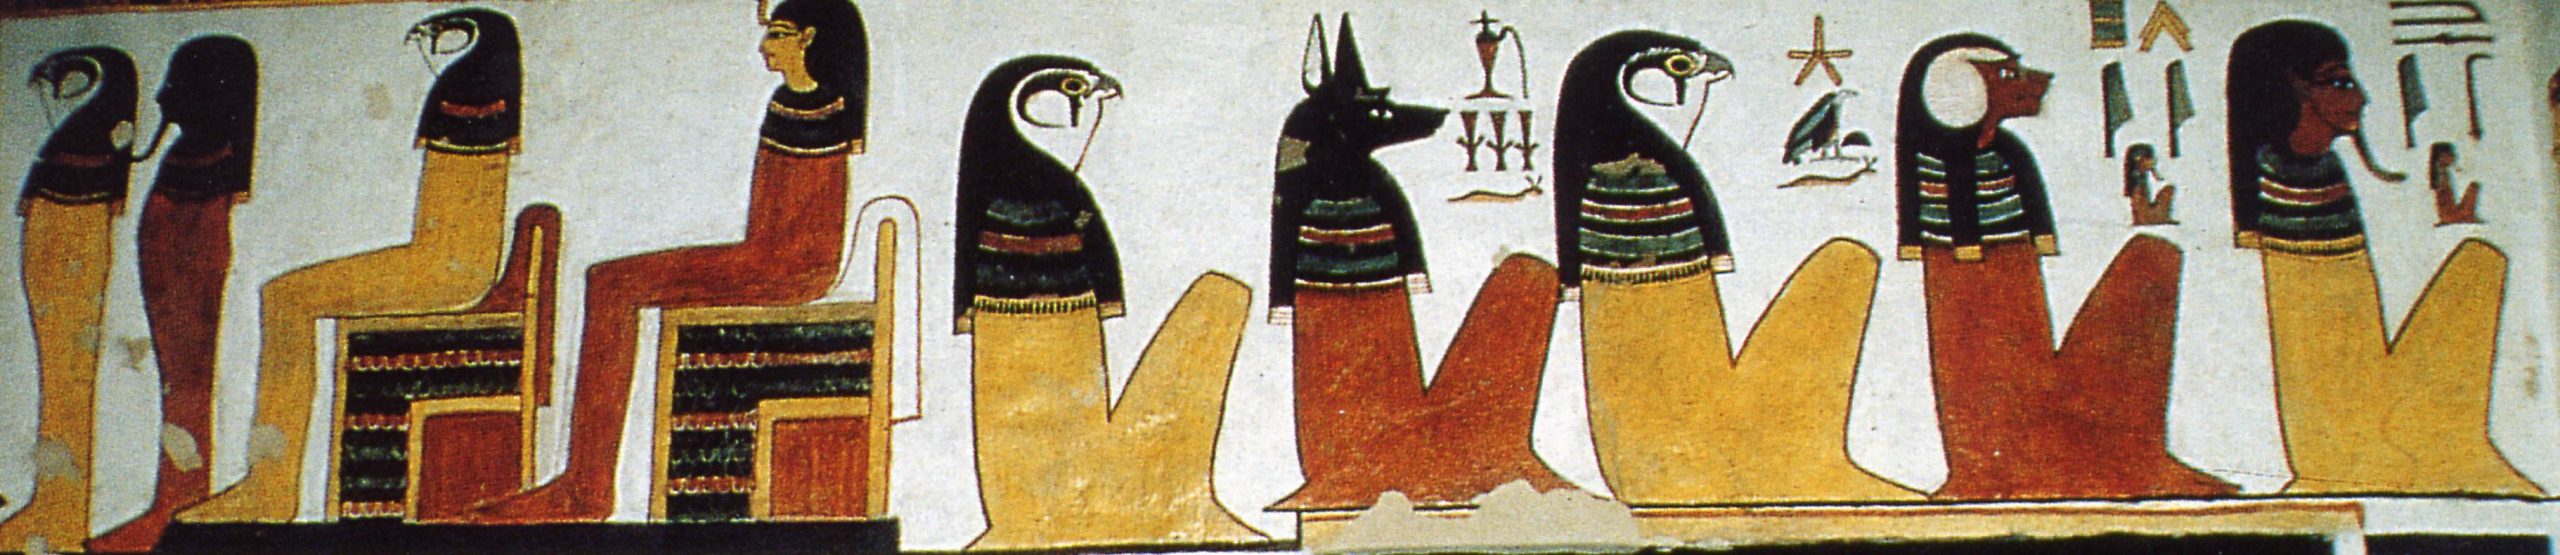 Imagen 6. Muro norte. Horus y los 4 hijos de Horus